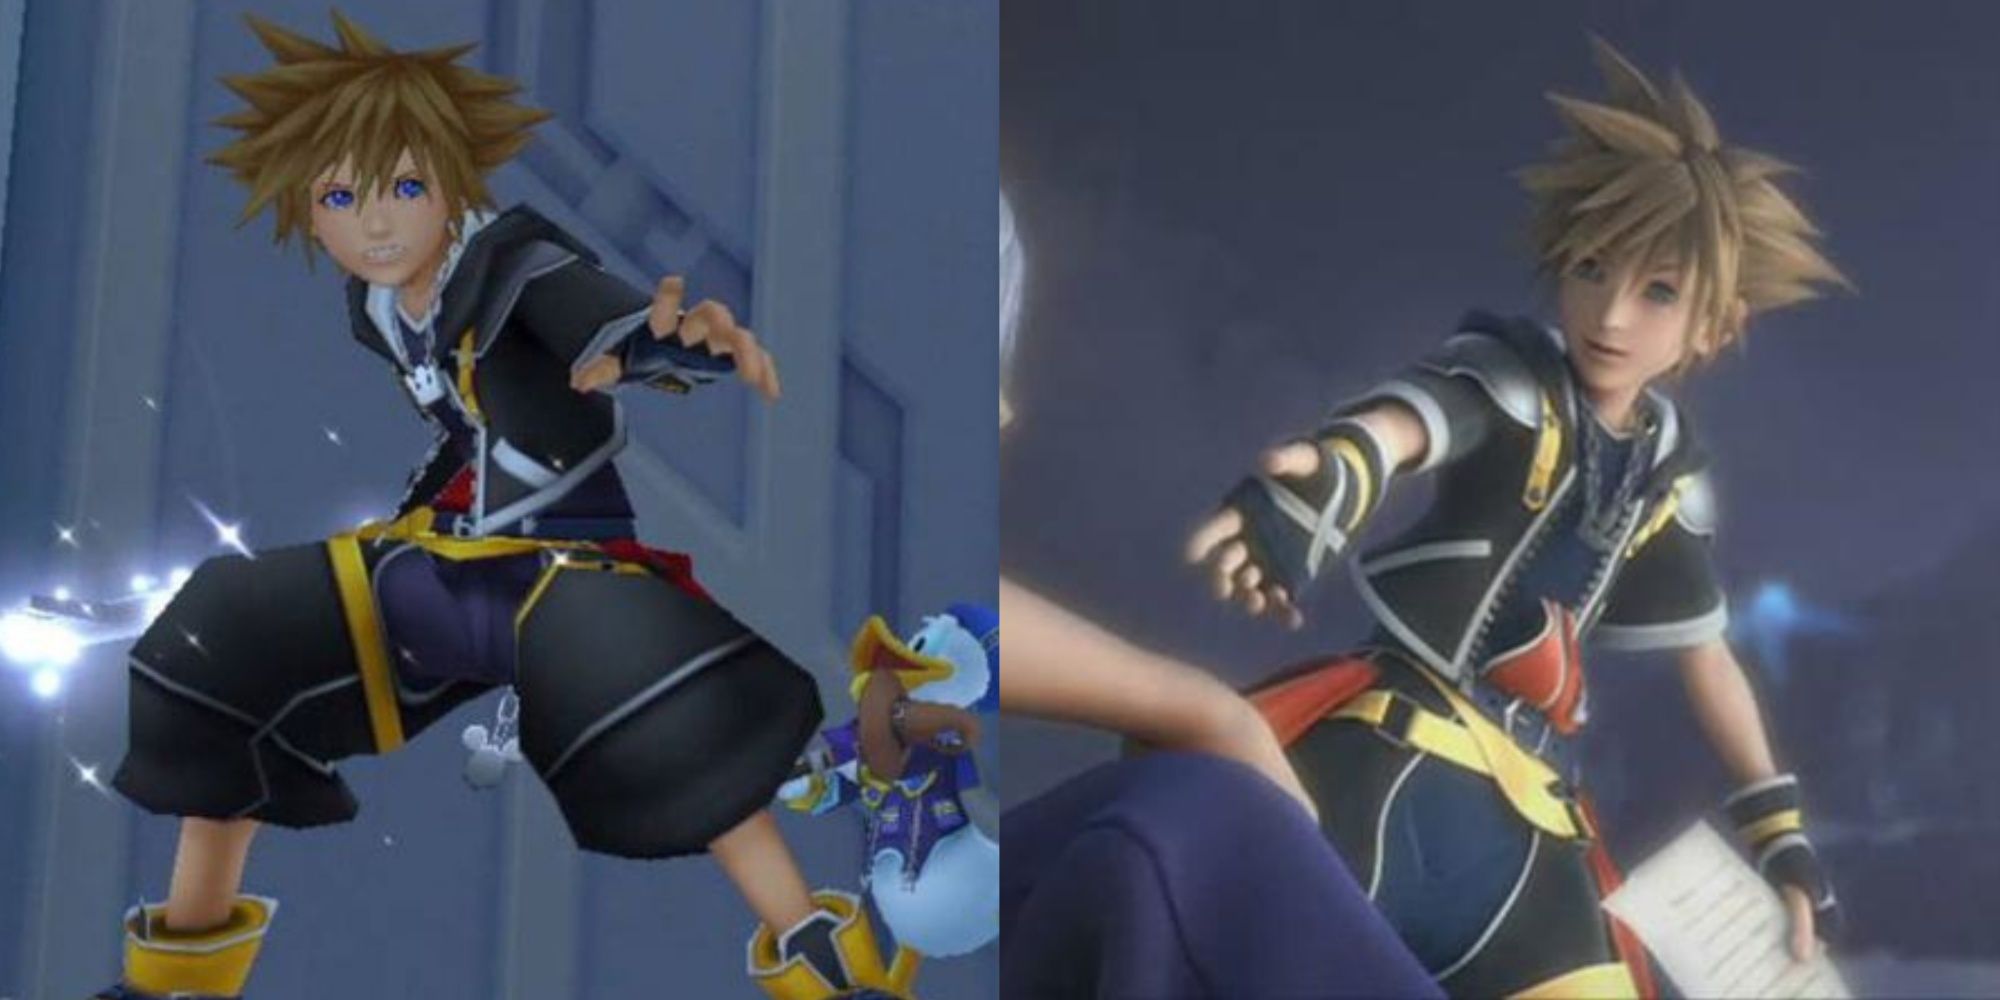 Split images of Sora in Kingdom Hearts 2